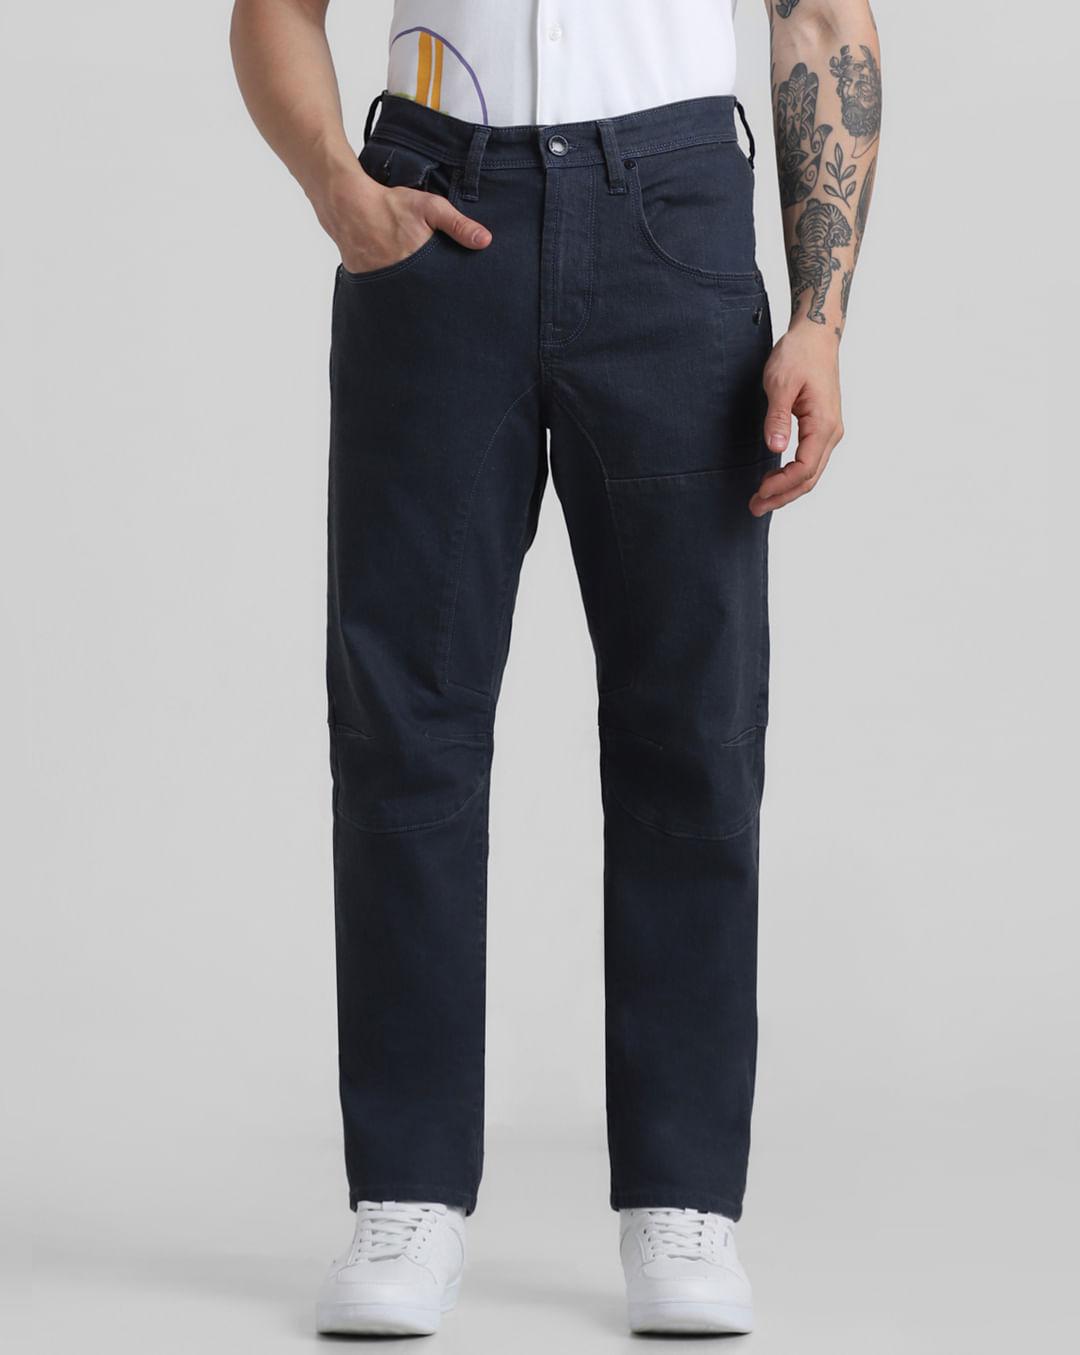 dark grey low rise cut & sew anti fit jeans